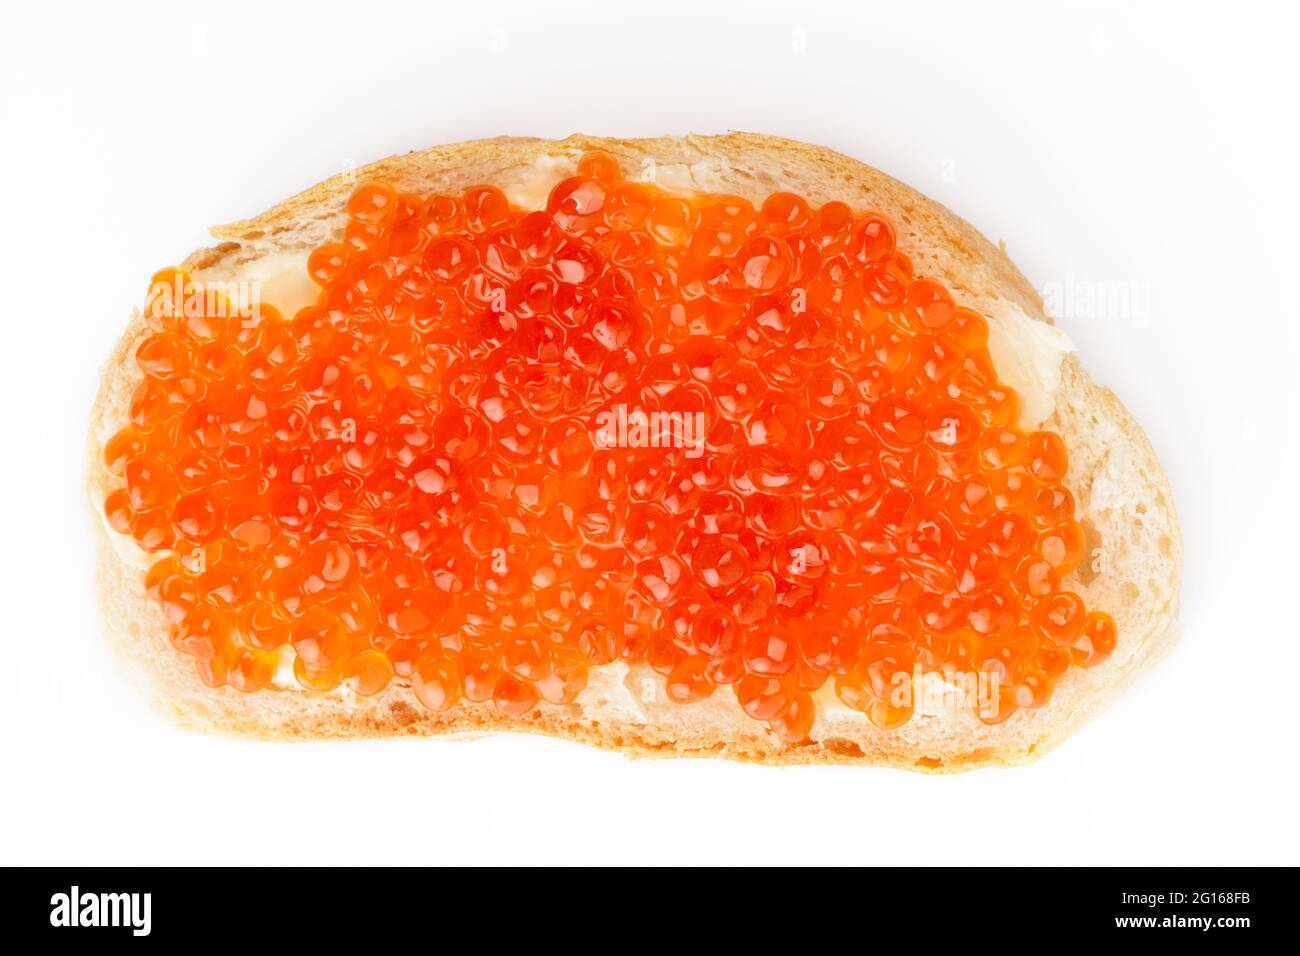 Brot mit rotem Lachsrogen von oben auf hellem Hintergrund geschossen Stockfoto